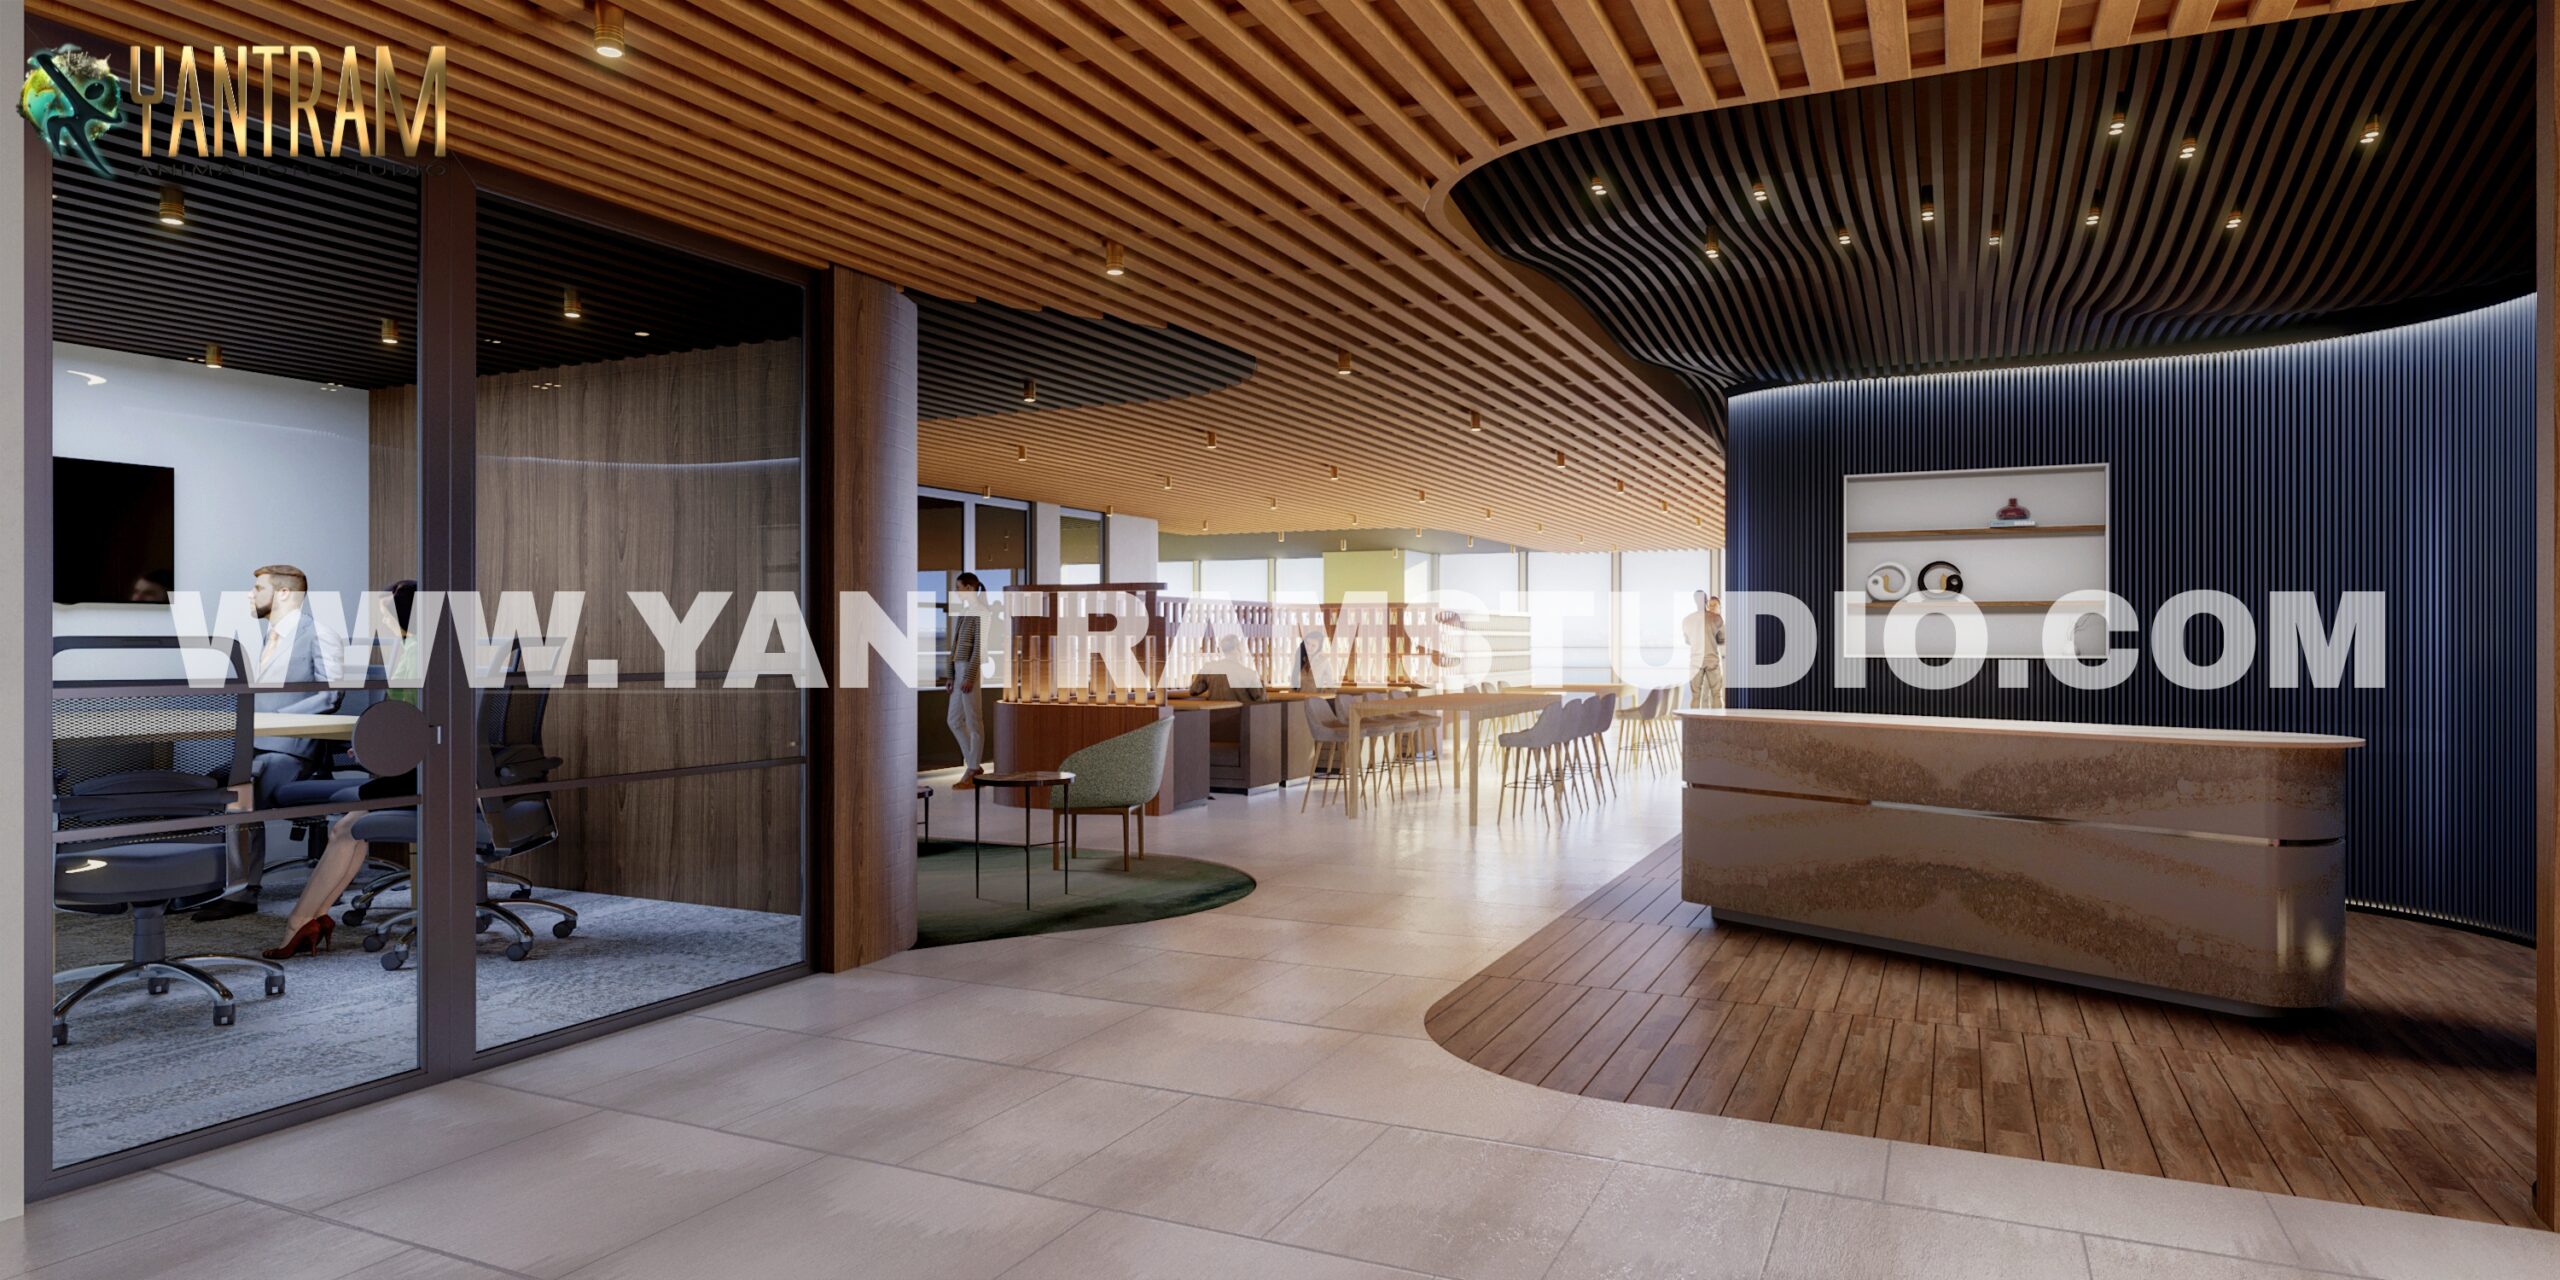 PicsArt-3d interior rendering company